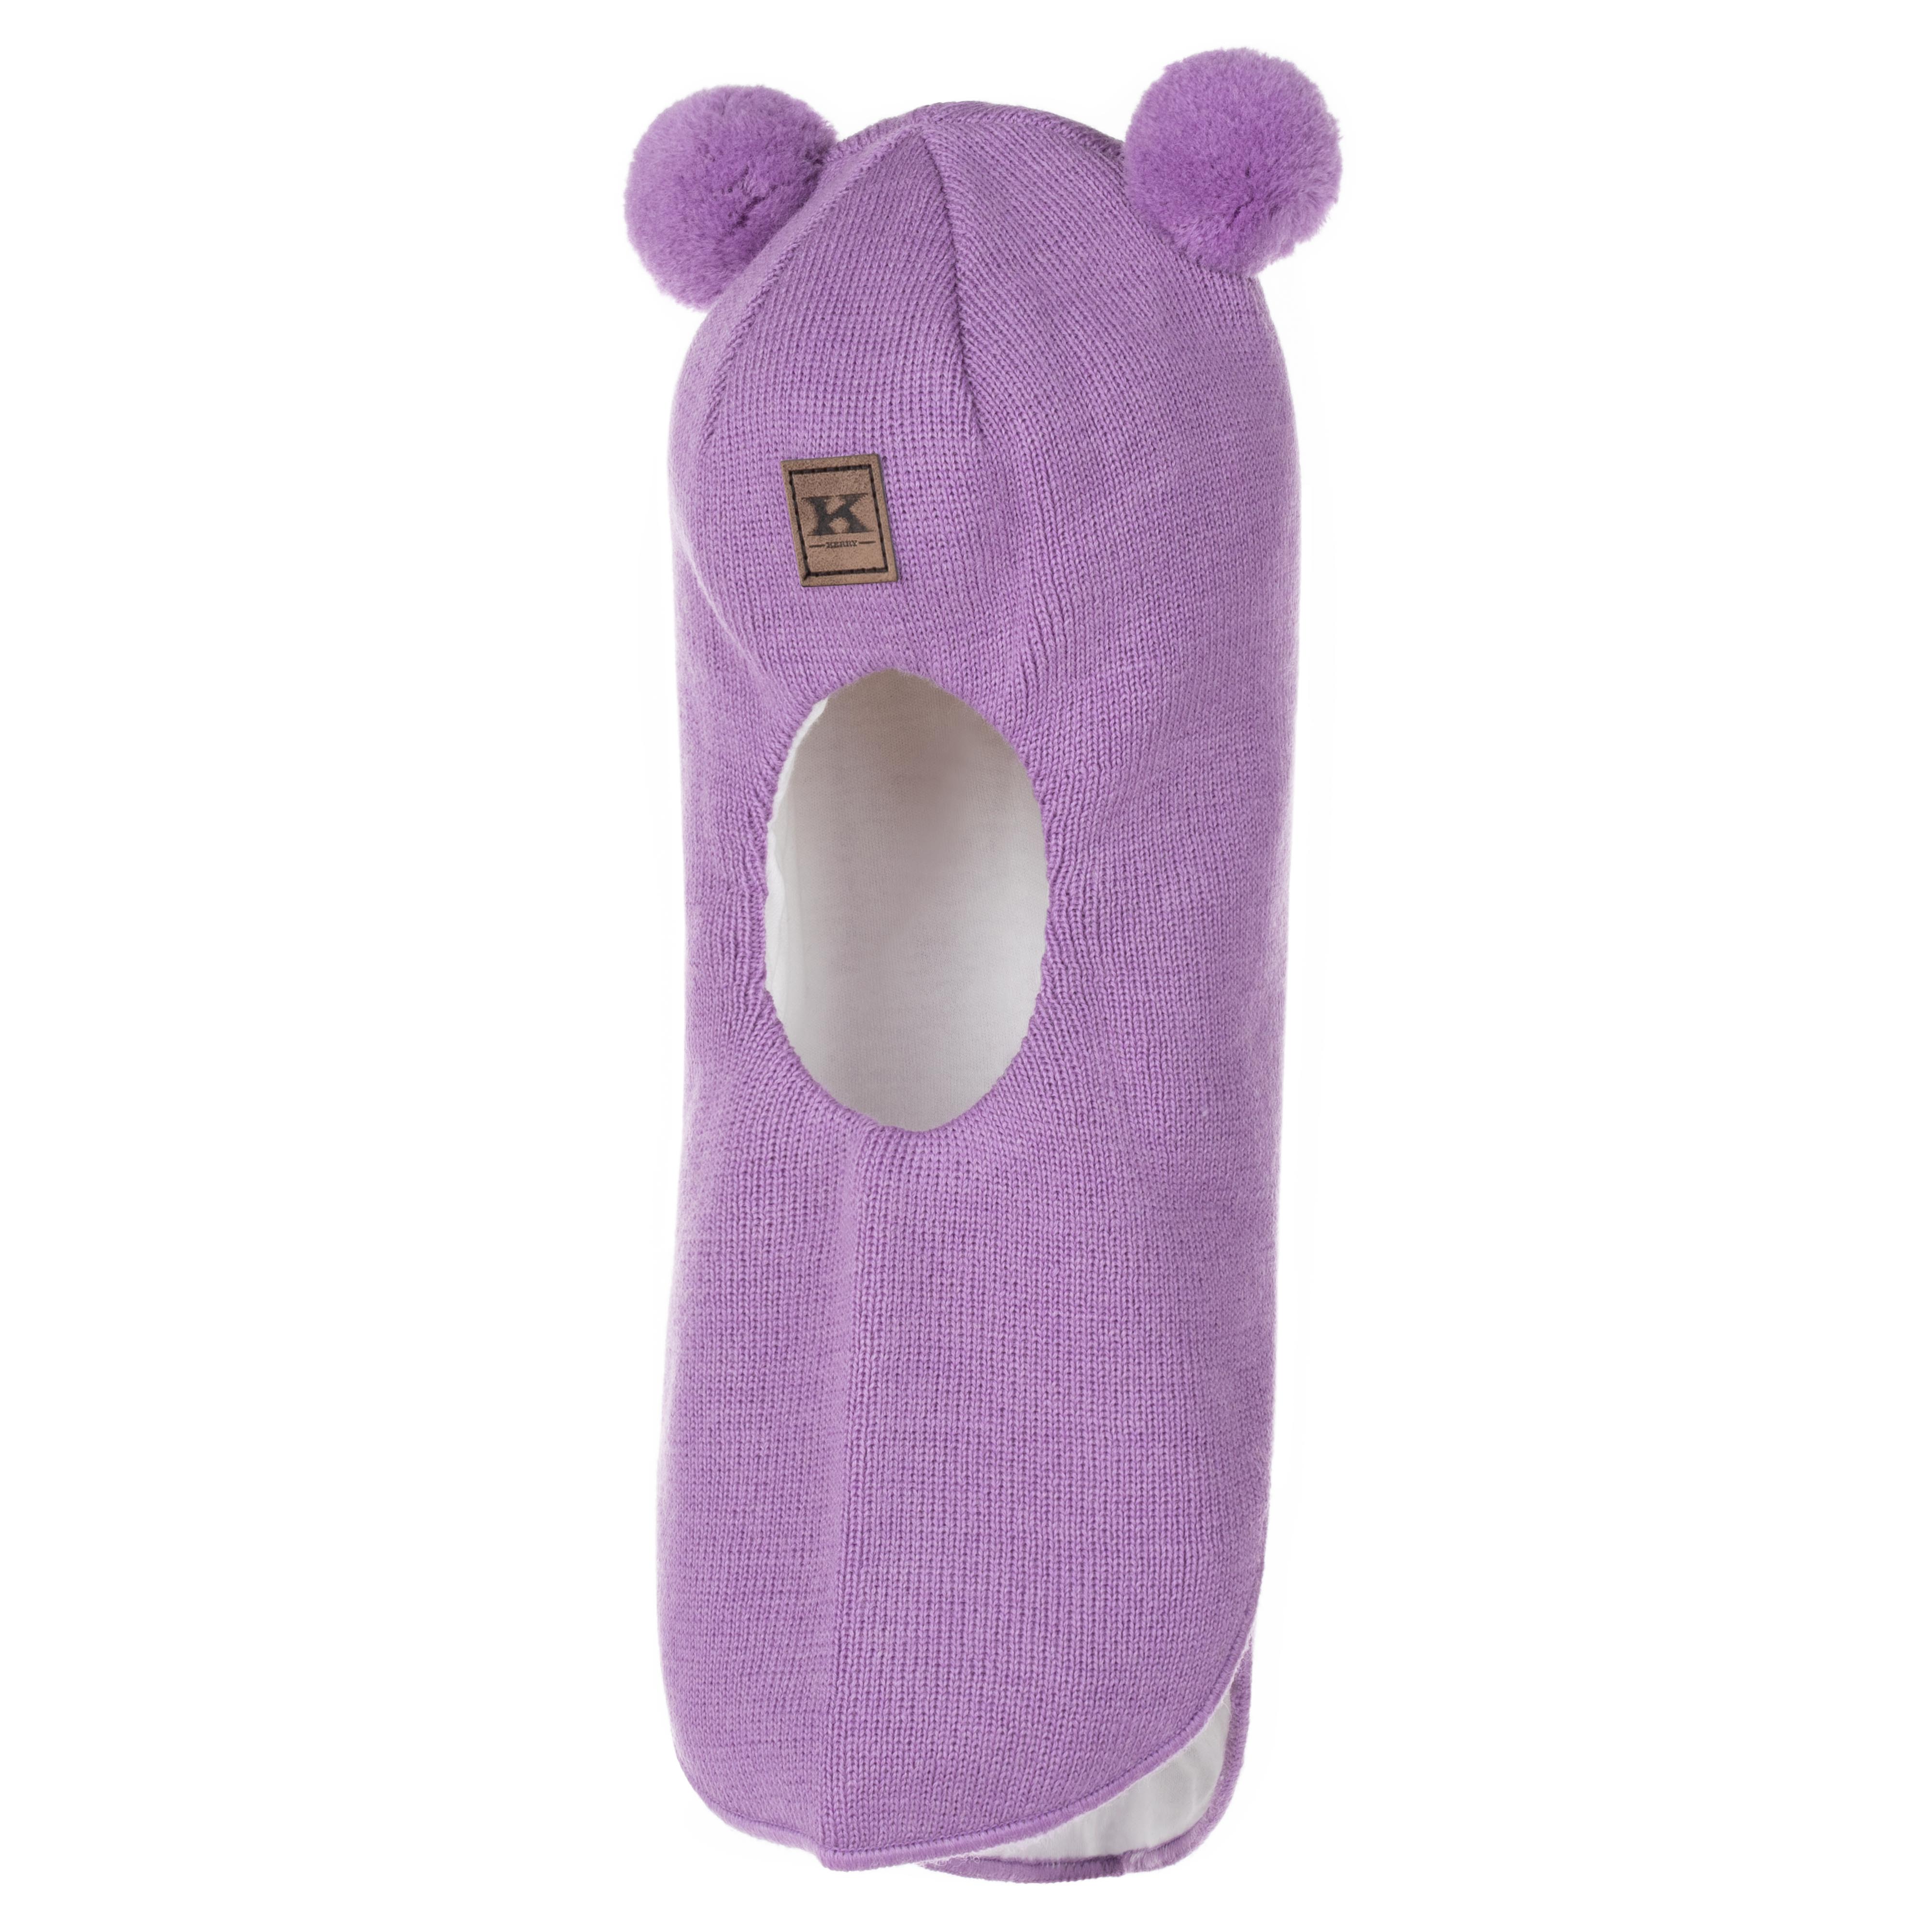 Шапка детская KERRY K23575, фиолетовый, 50